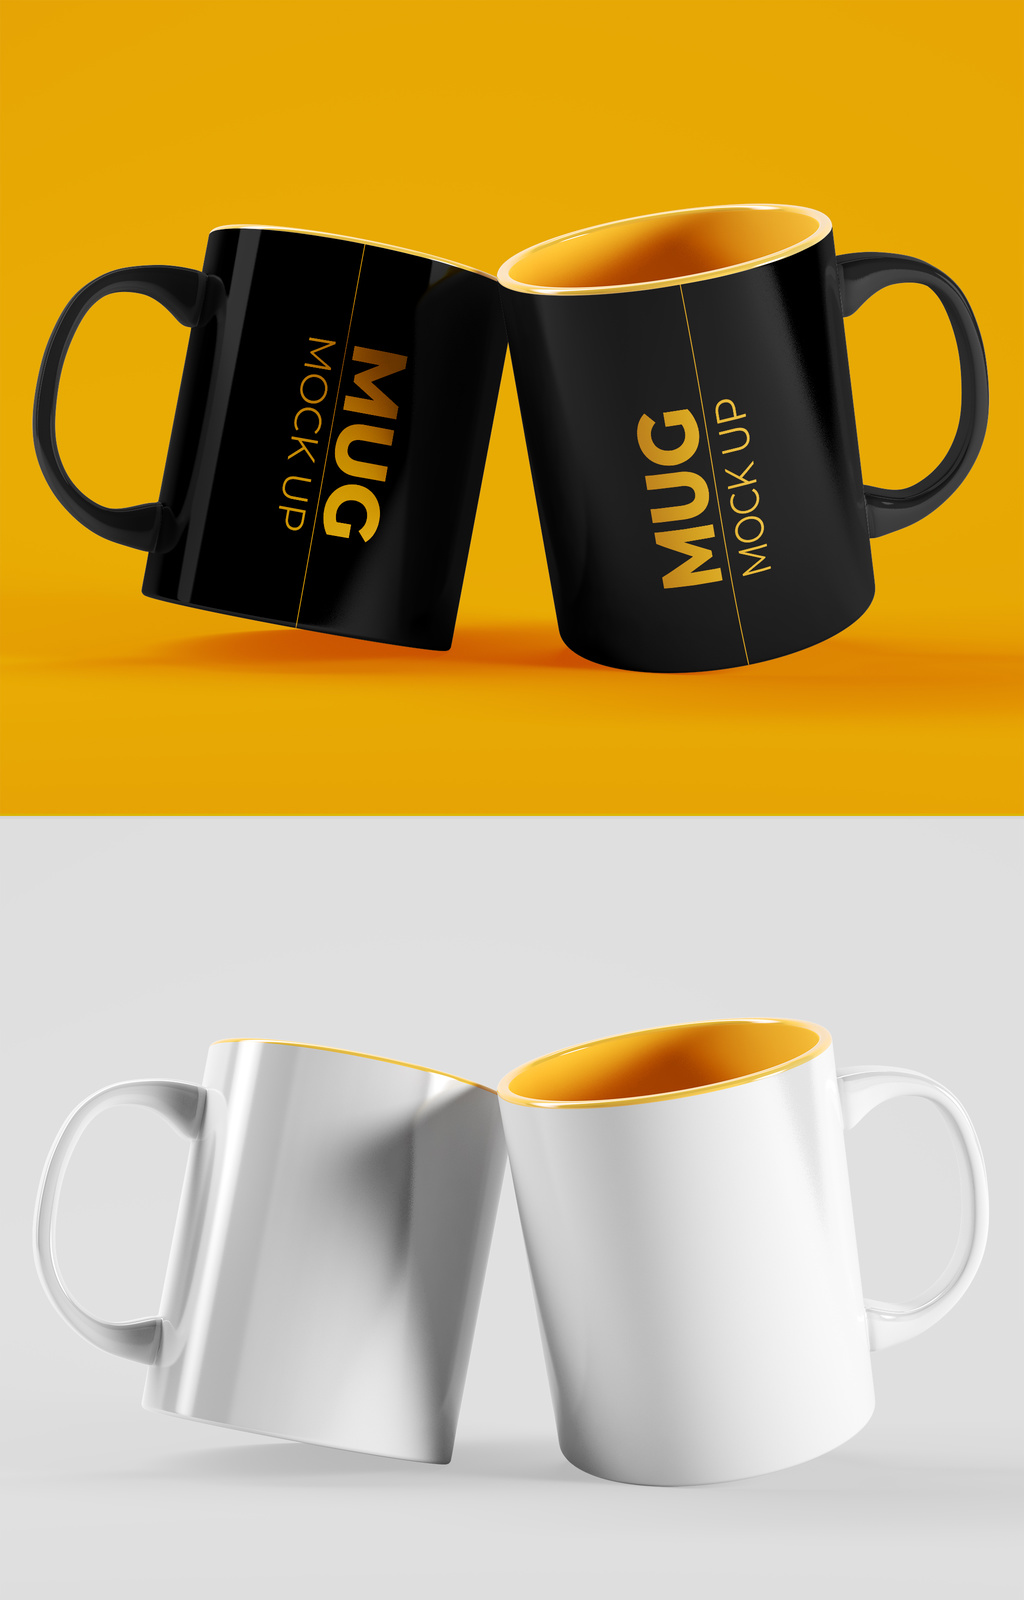 2-mug-cups-mockup-psd